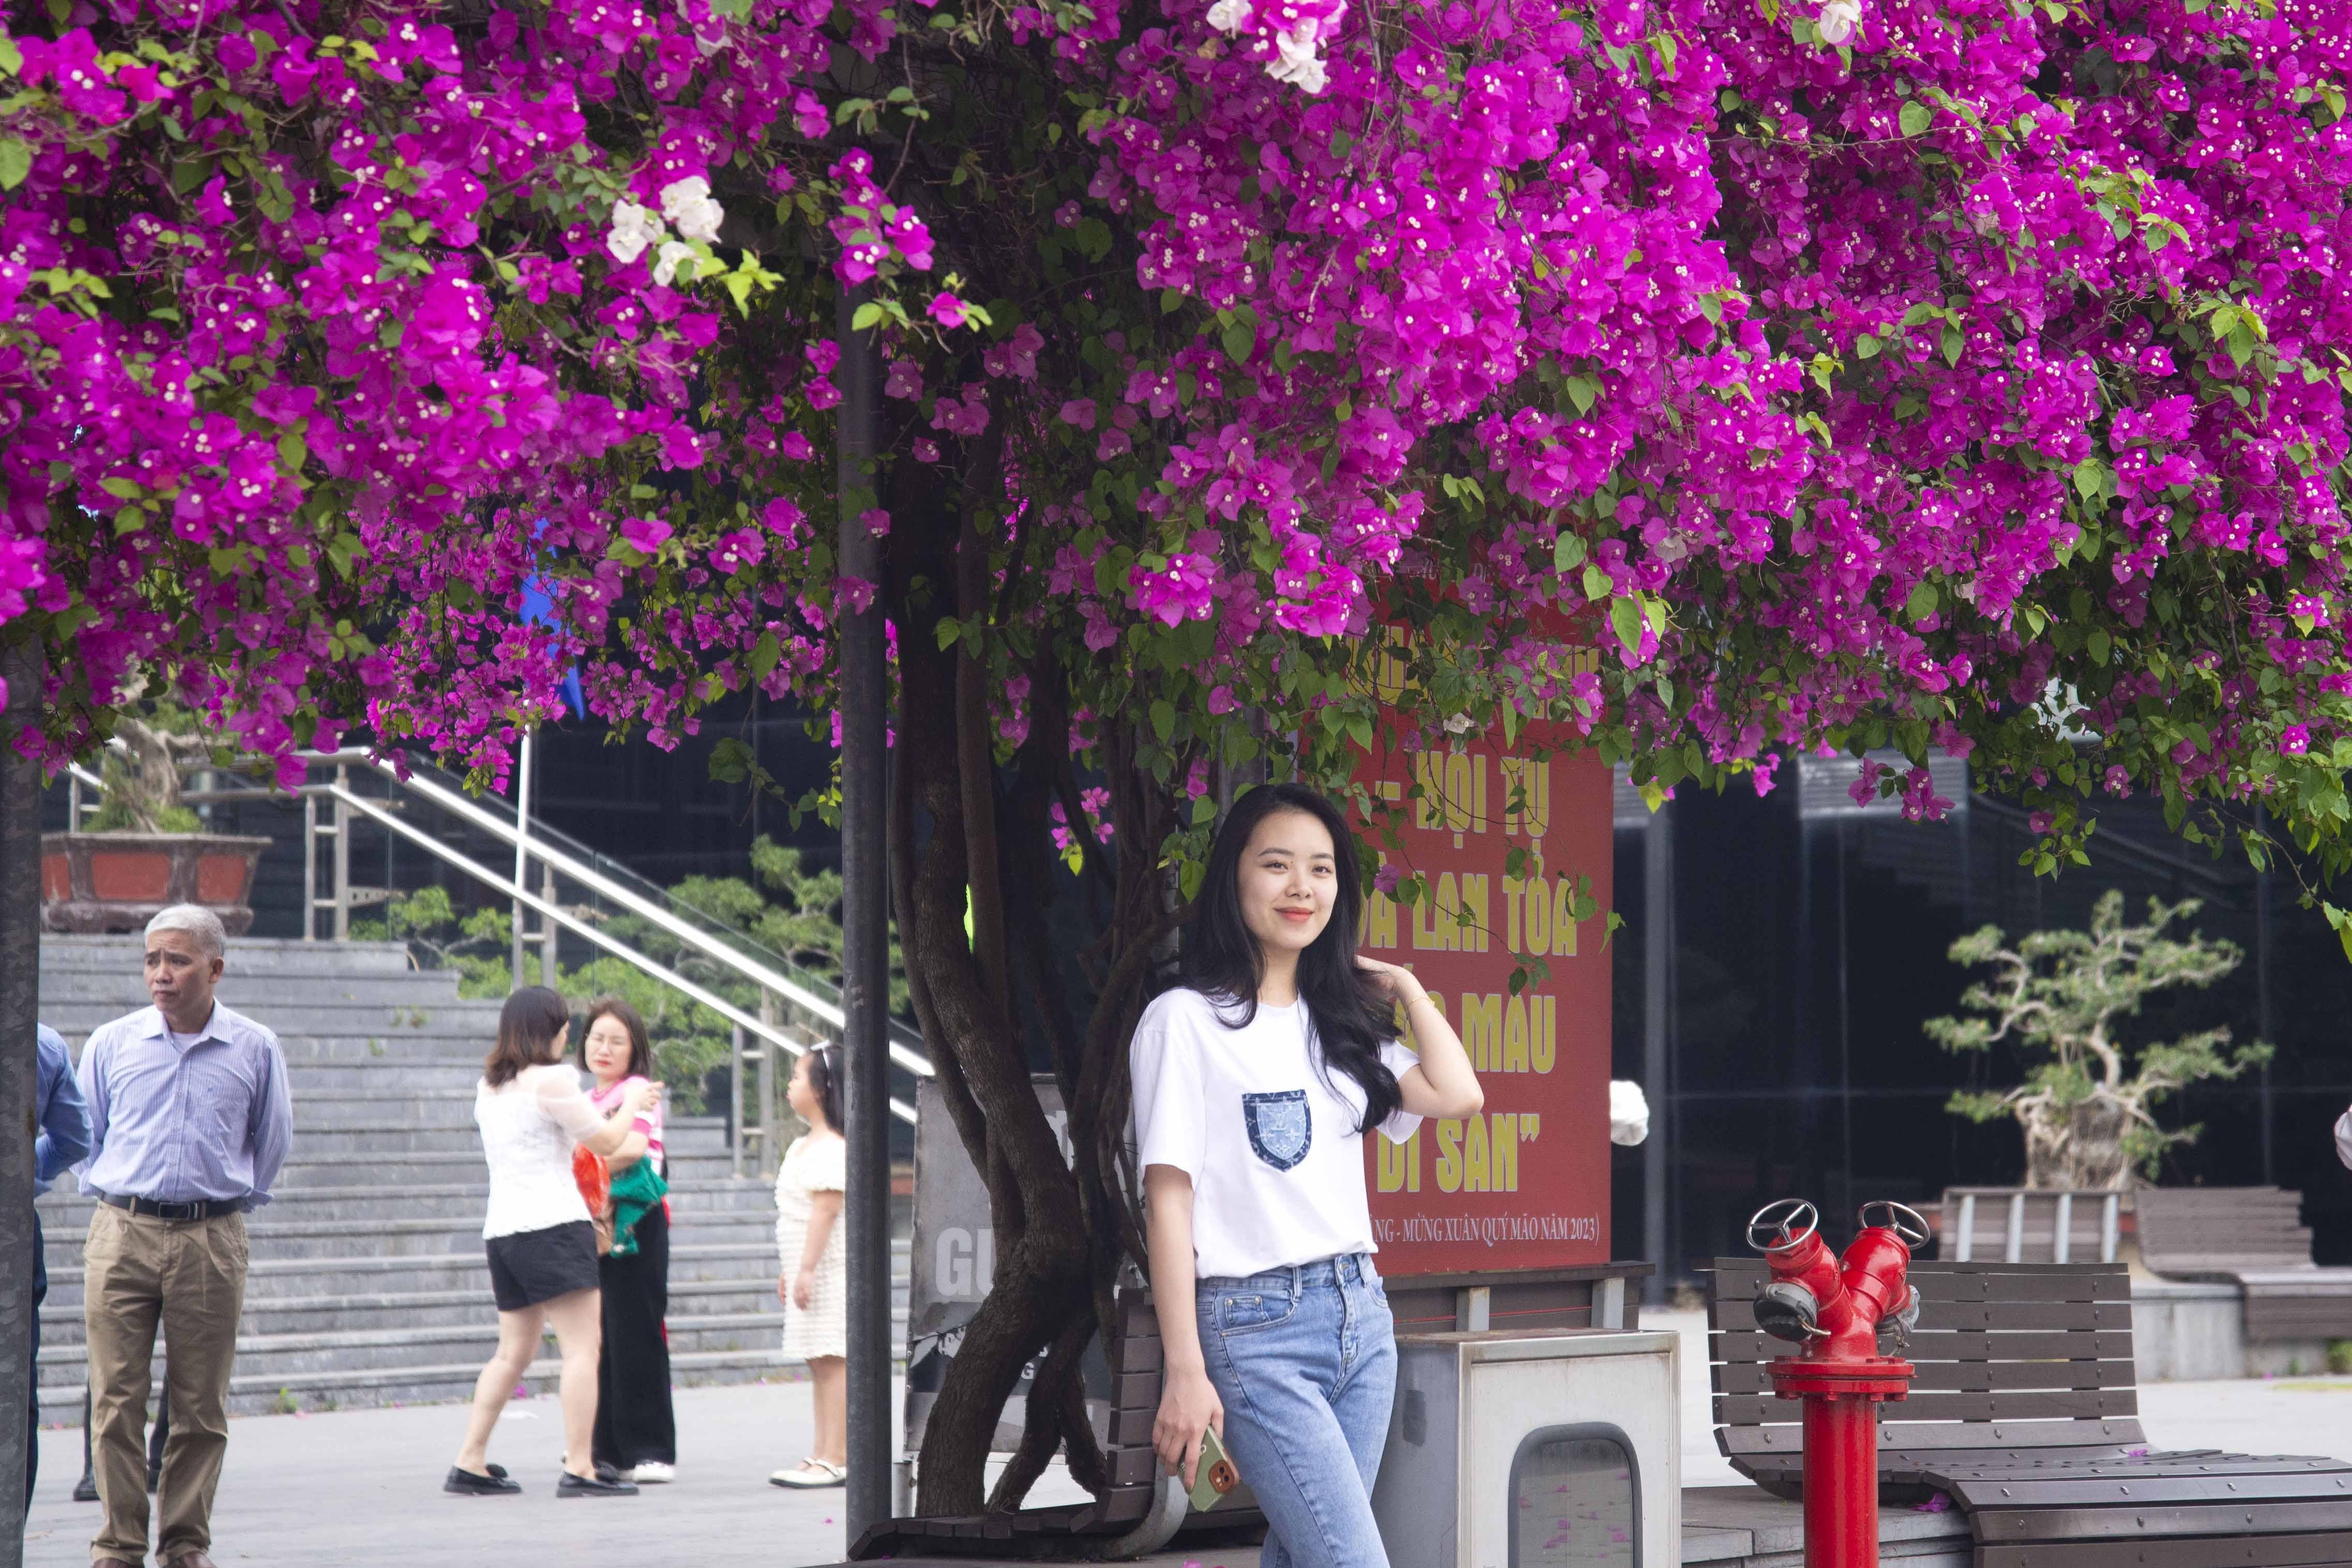 Hàng hoa giấy trăm cây nở rộ tuyệt đẹp ở Hạ Long, du khách xếp hàng check-in